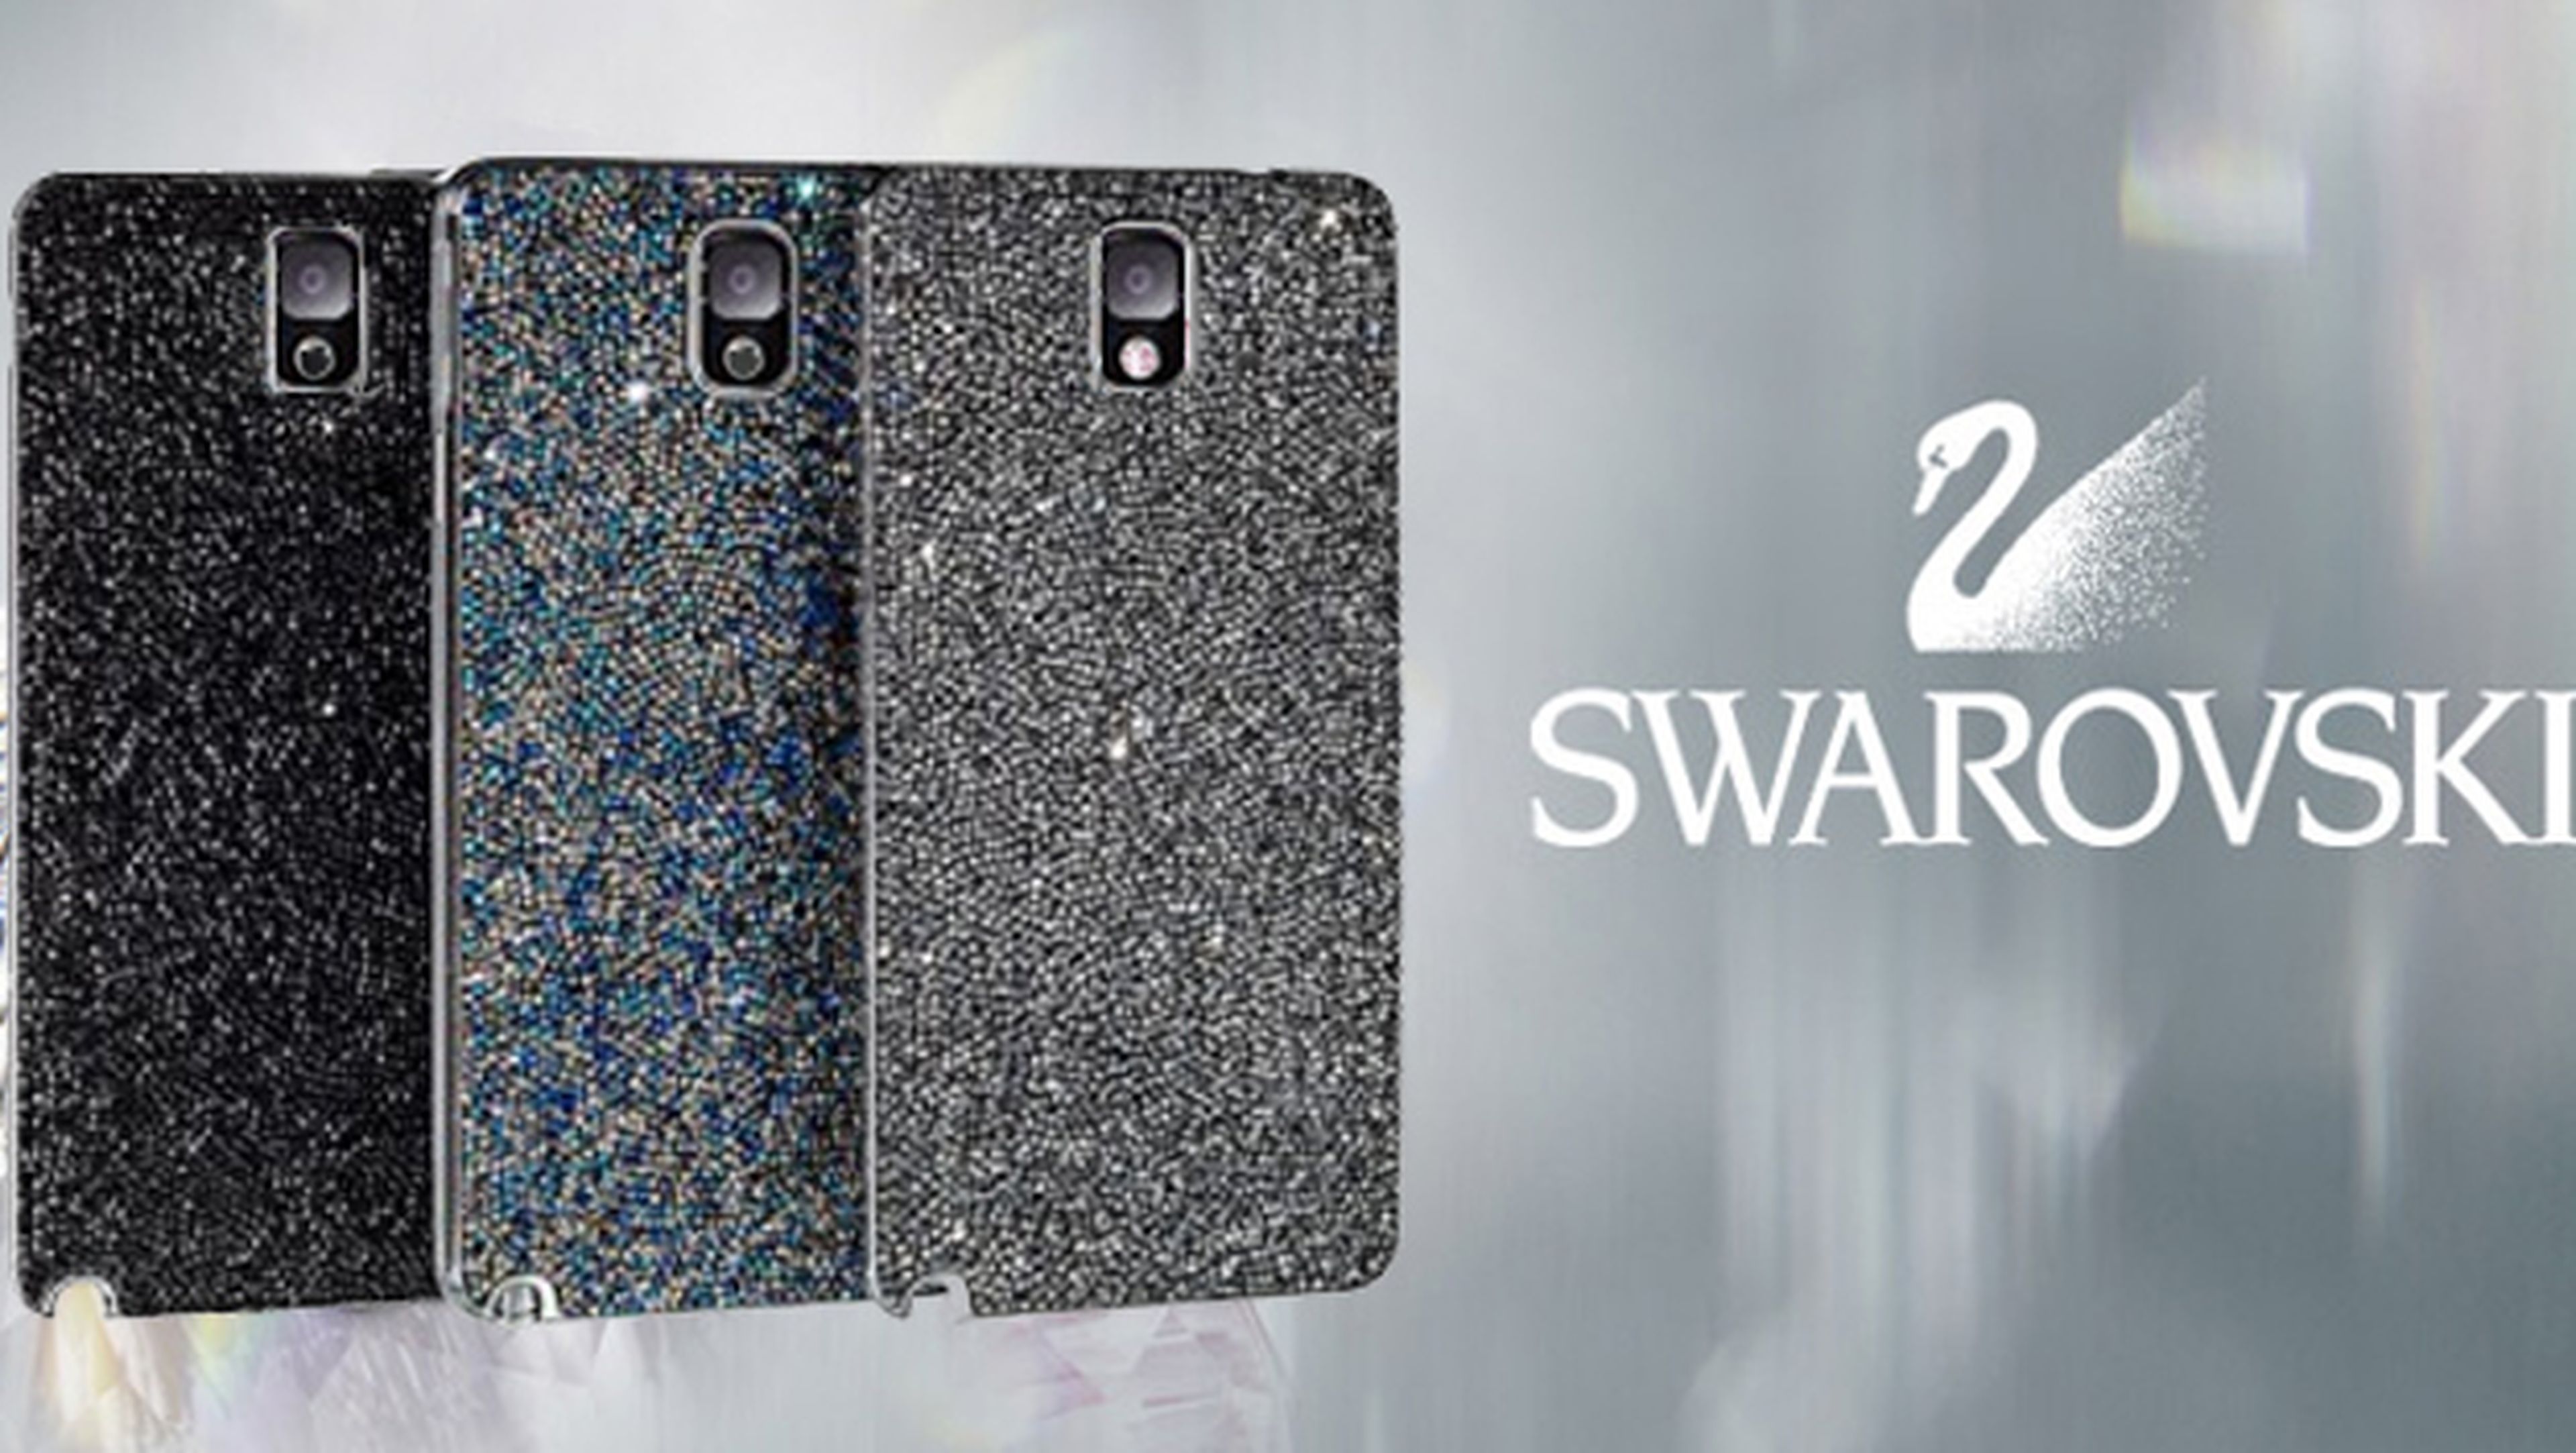 Samsung y Swarovski crean carcasa para el Galaxy Note 3